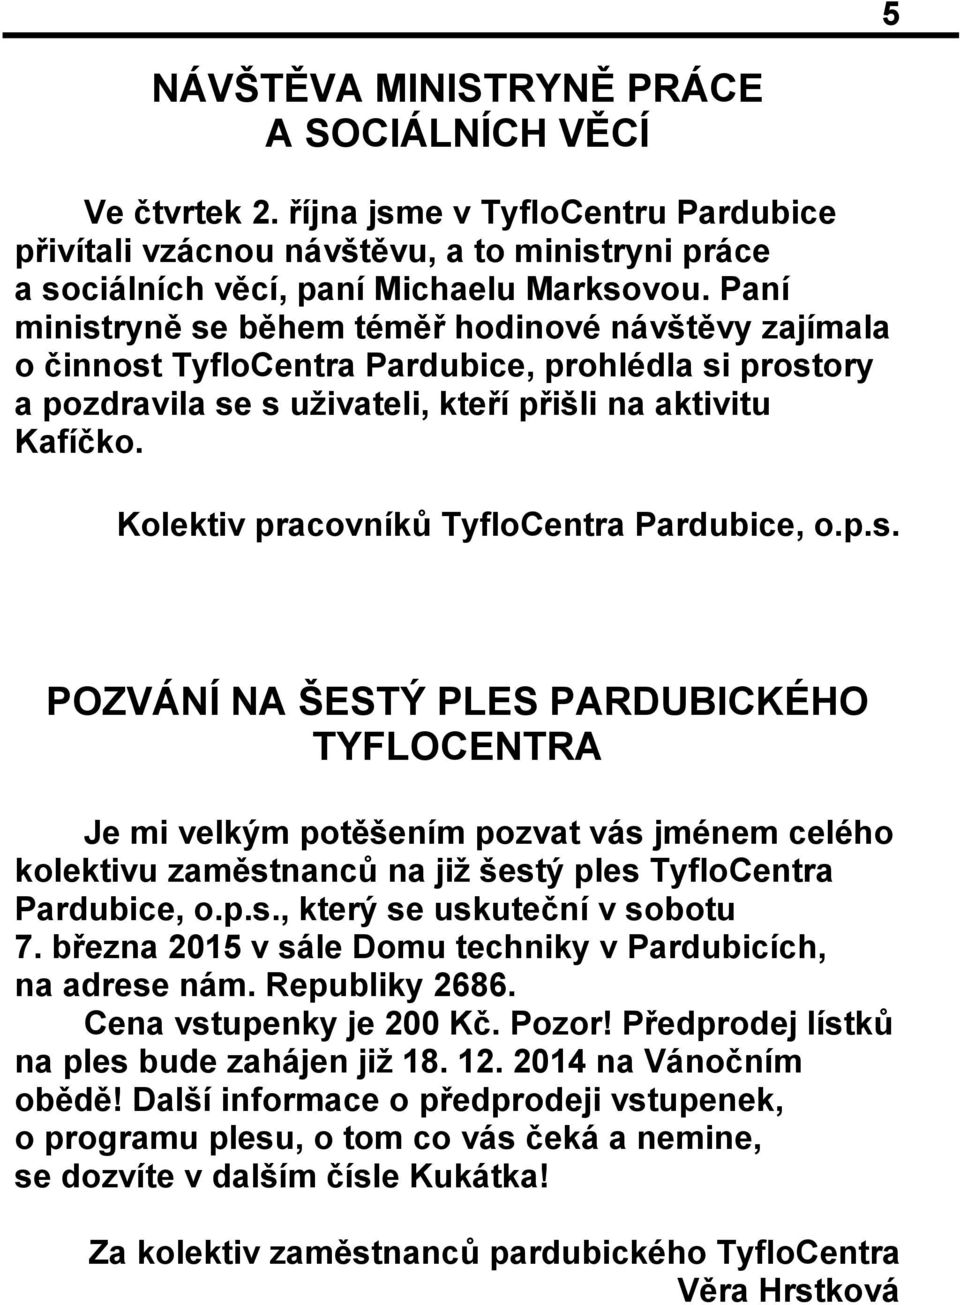 Kolektiv pracovníků TyfloCentra Pardubice, o.p.s.